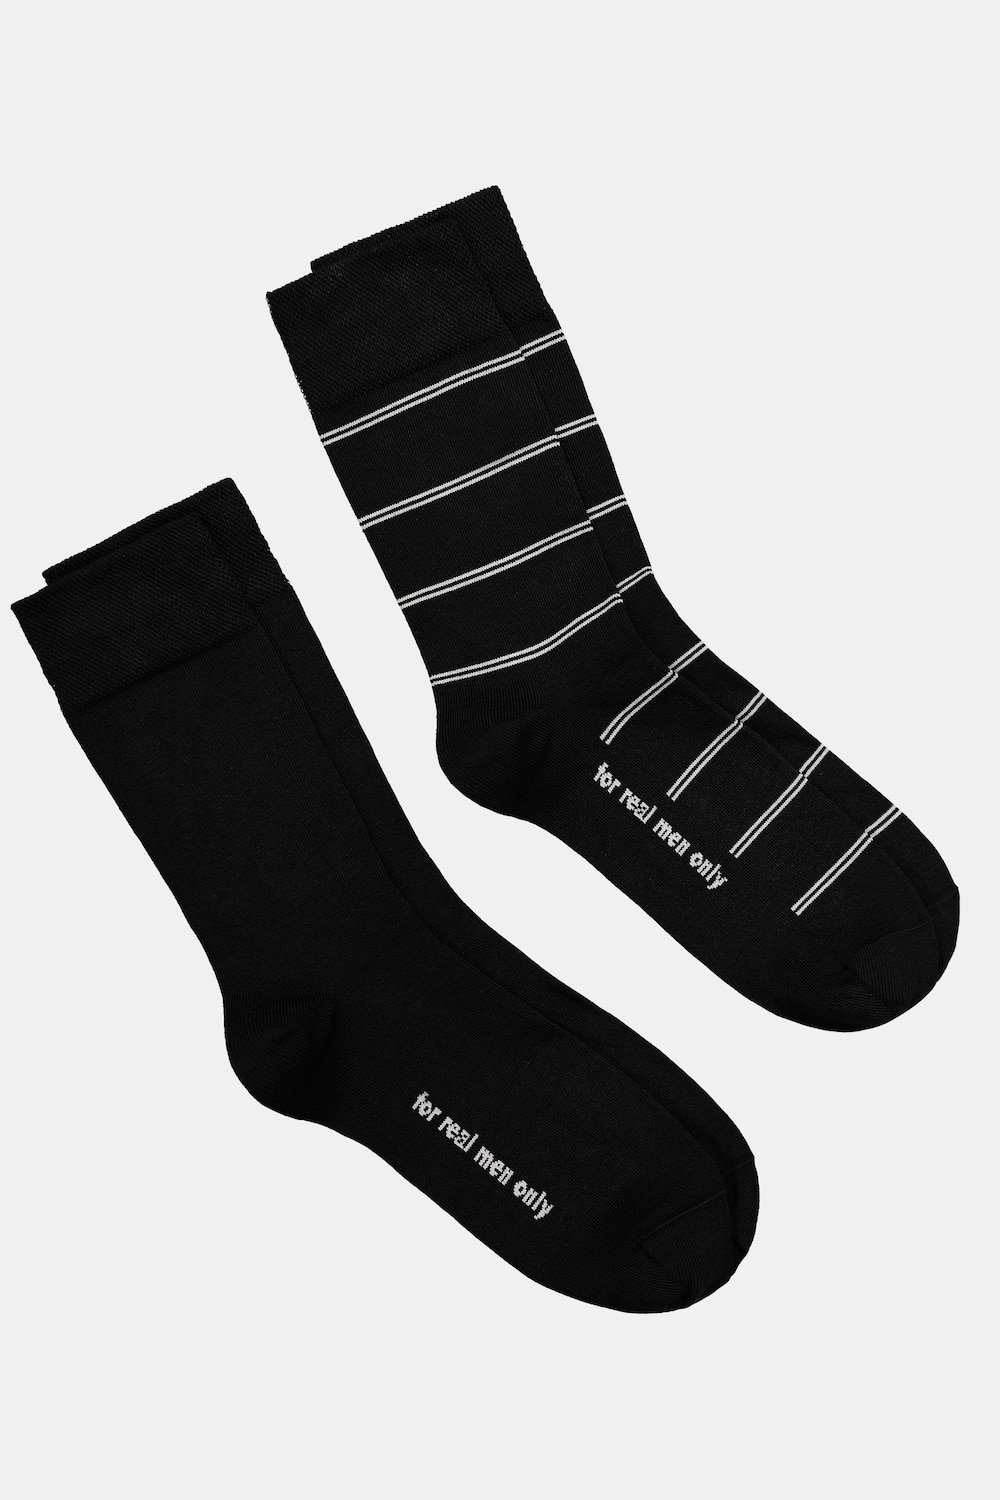 Große Größen JP1880 Socken, Herren, schwarz, Größe: 47-50, Baumwolle/Synthetische Fasern, JP1880 von JP1880